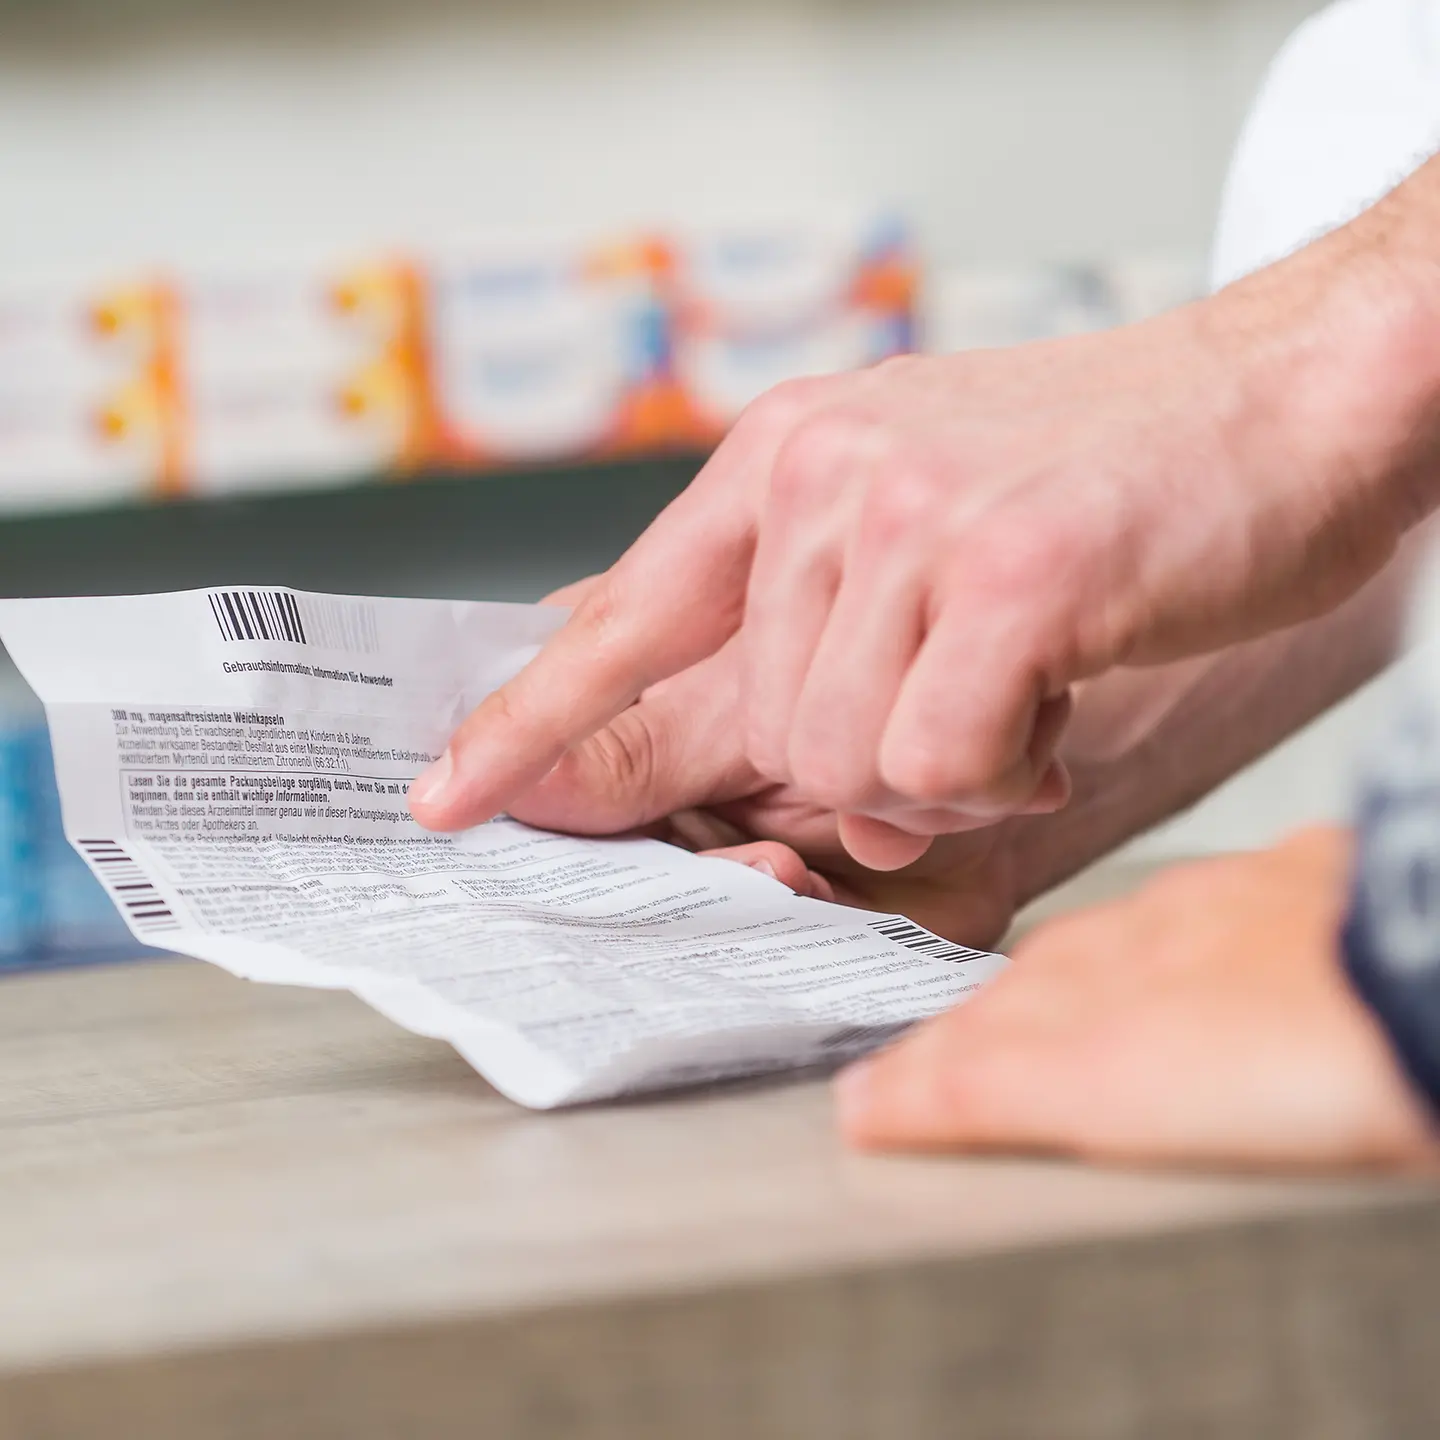 Das Bild zeigt die Hand einer Person in einer Apotheke mit einem Beipackzettel.